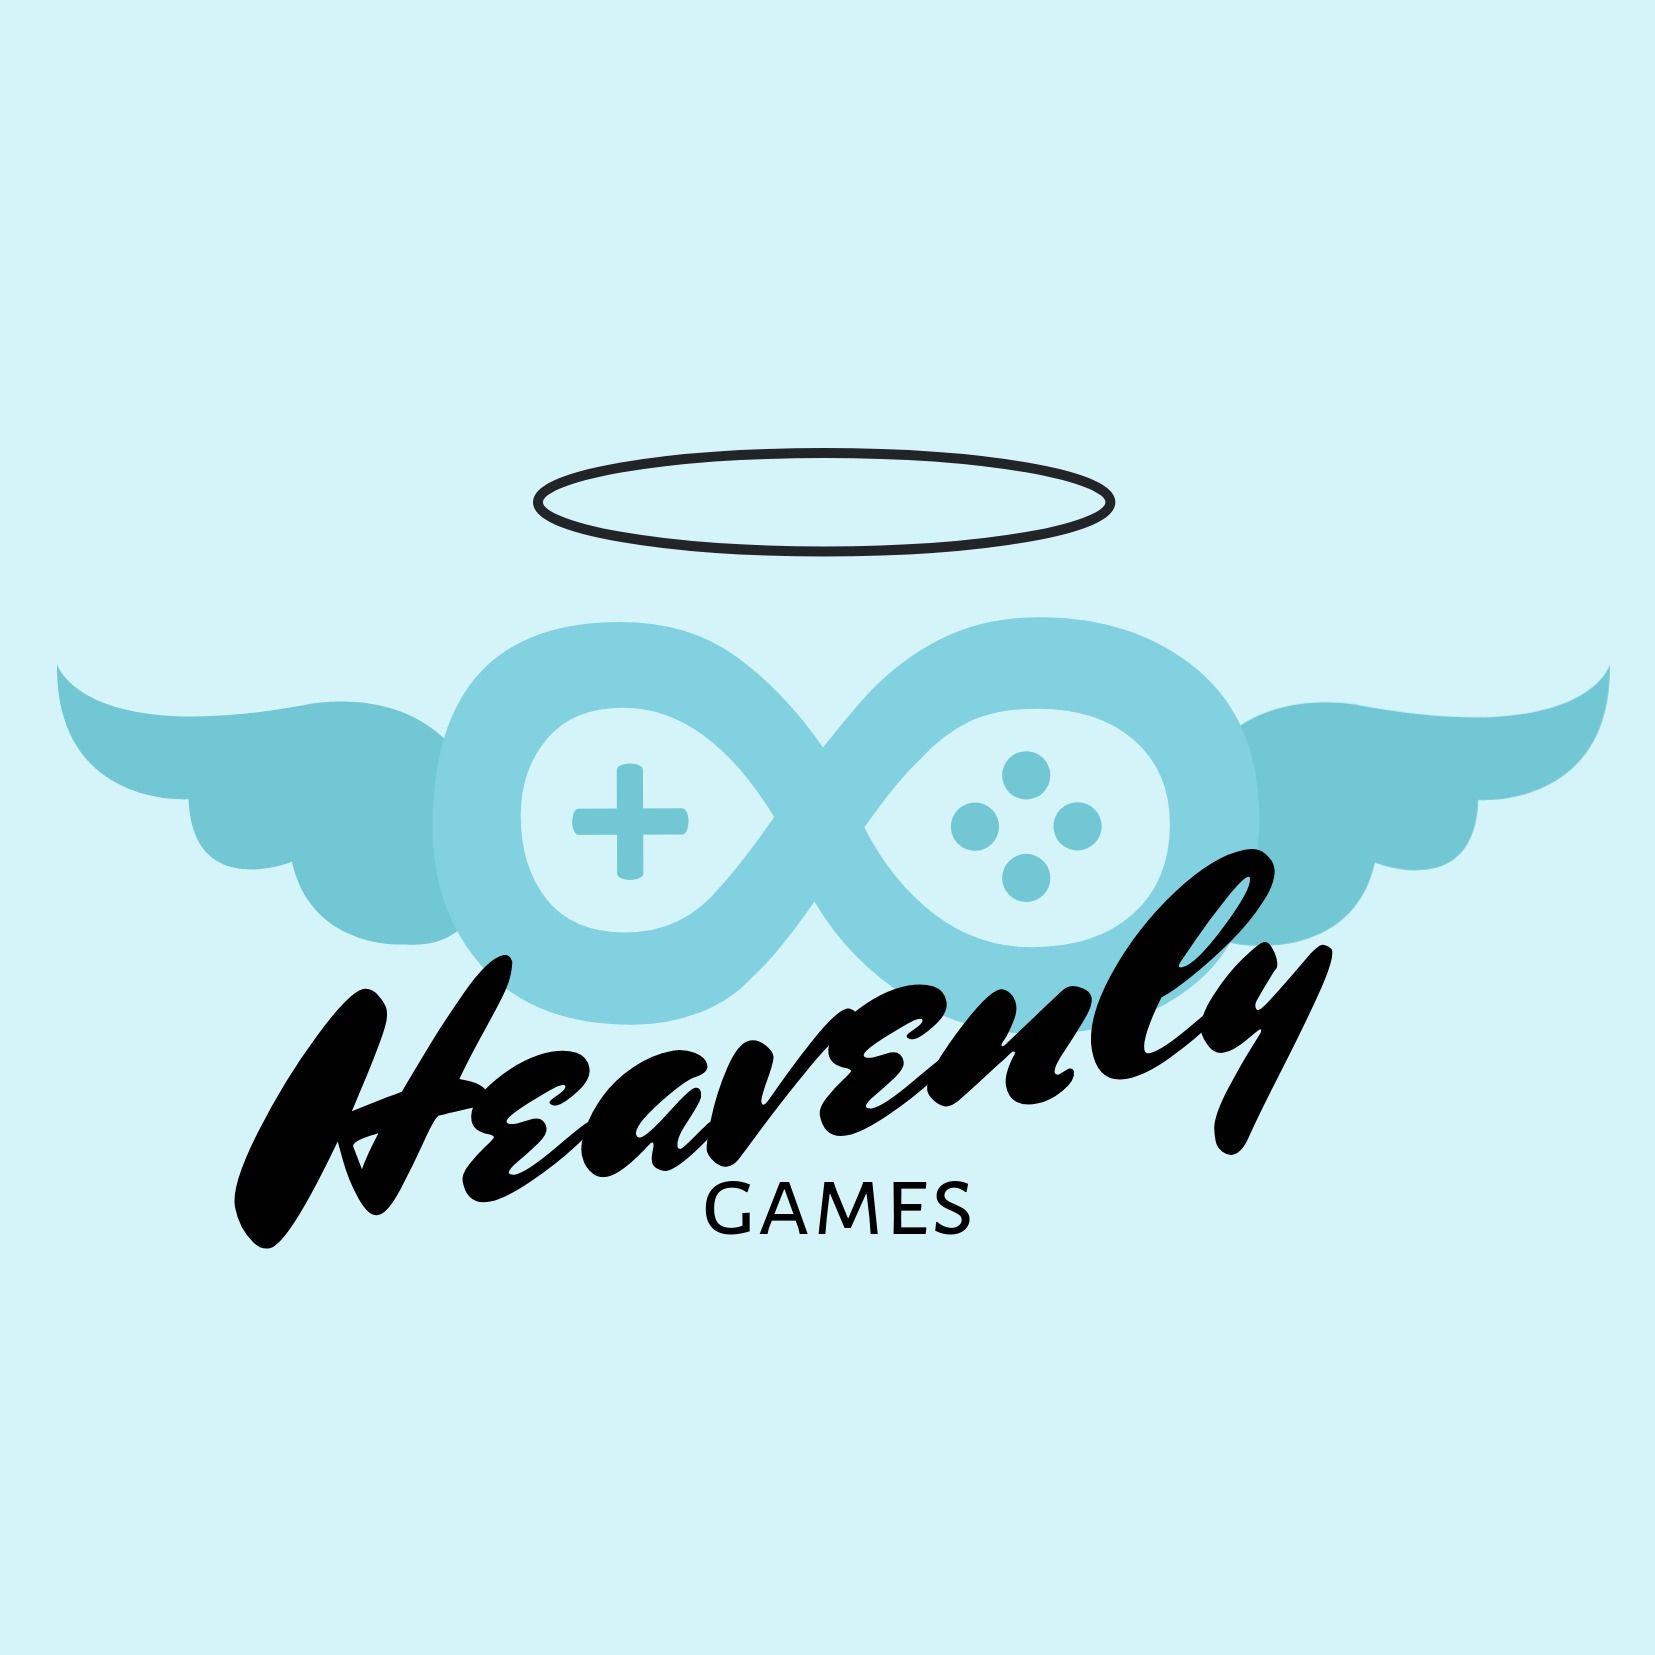 Logotipo Blue Gaming usando fonte decorativa com asas e ícones de jogos